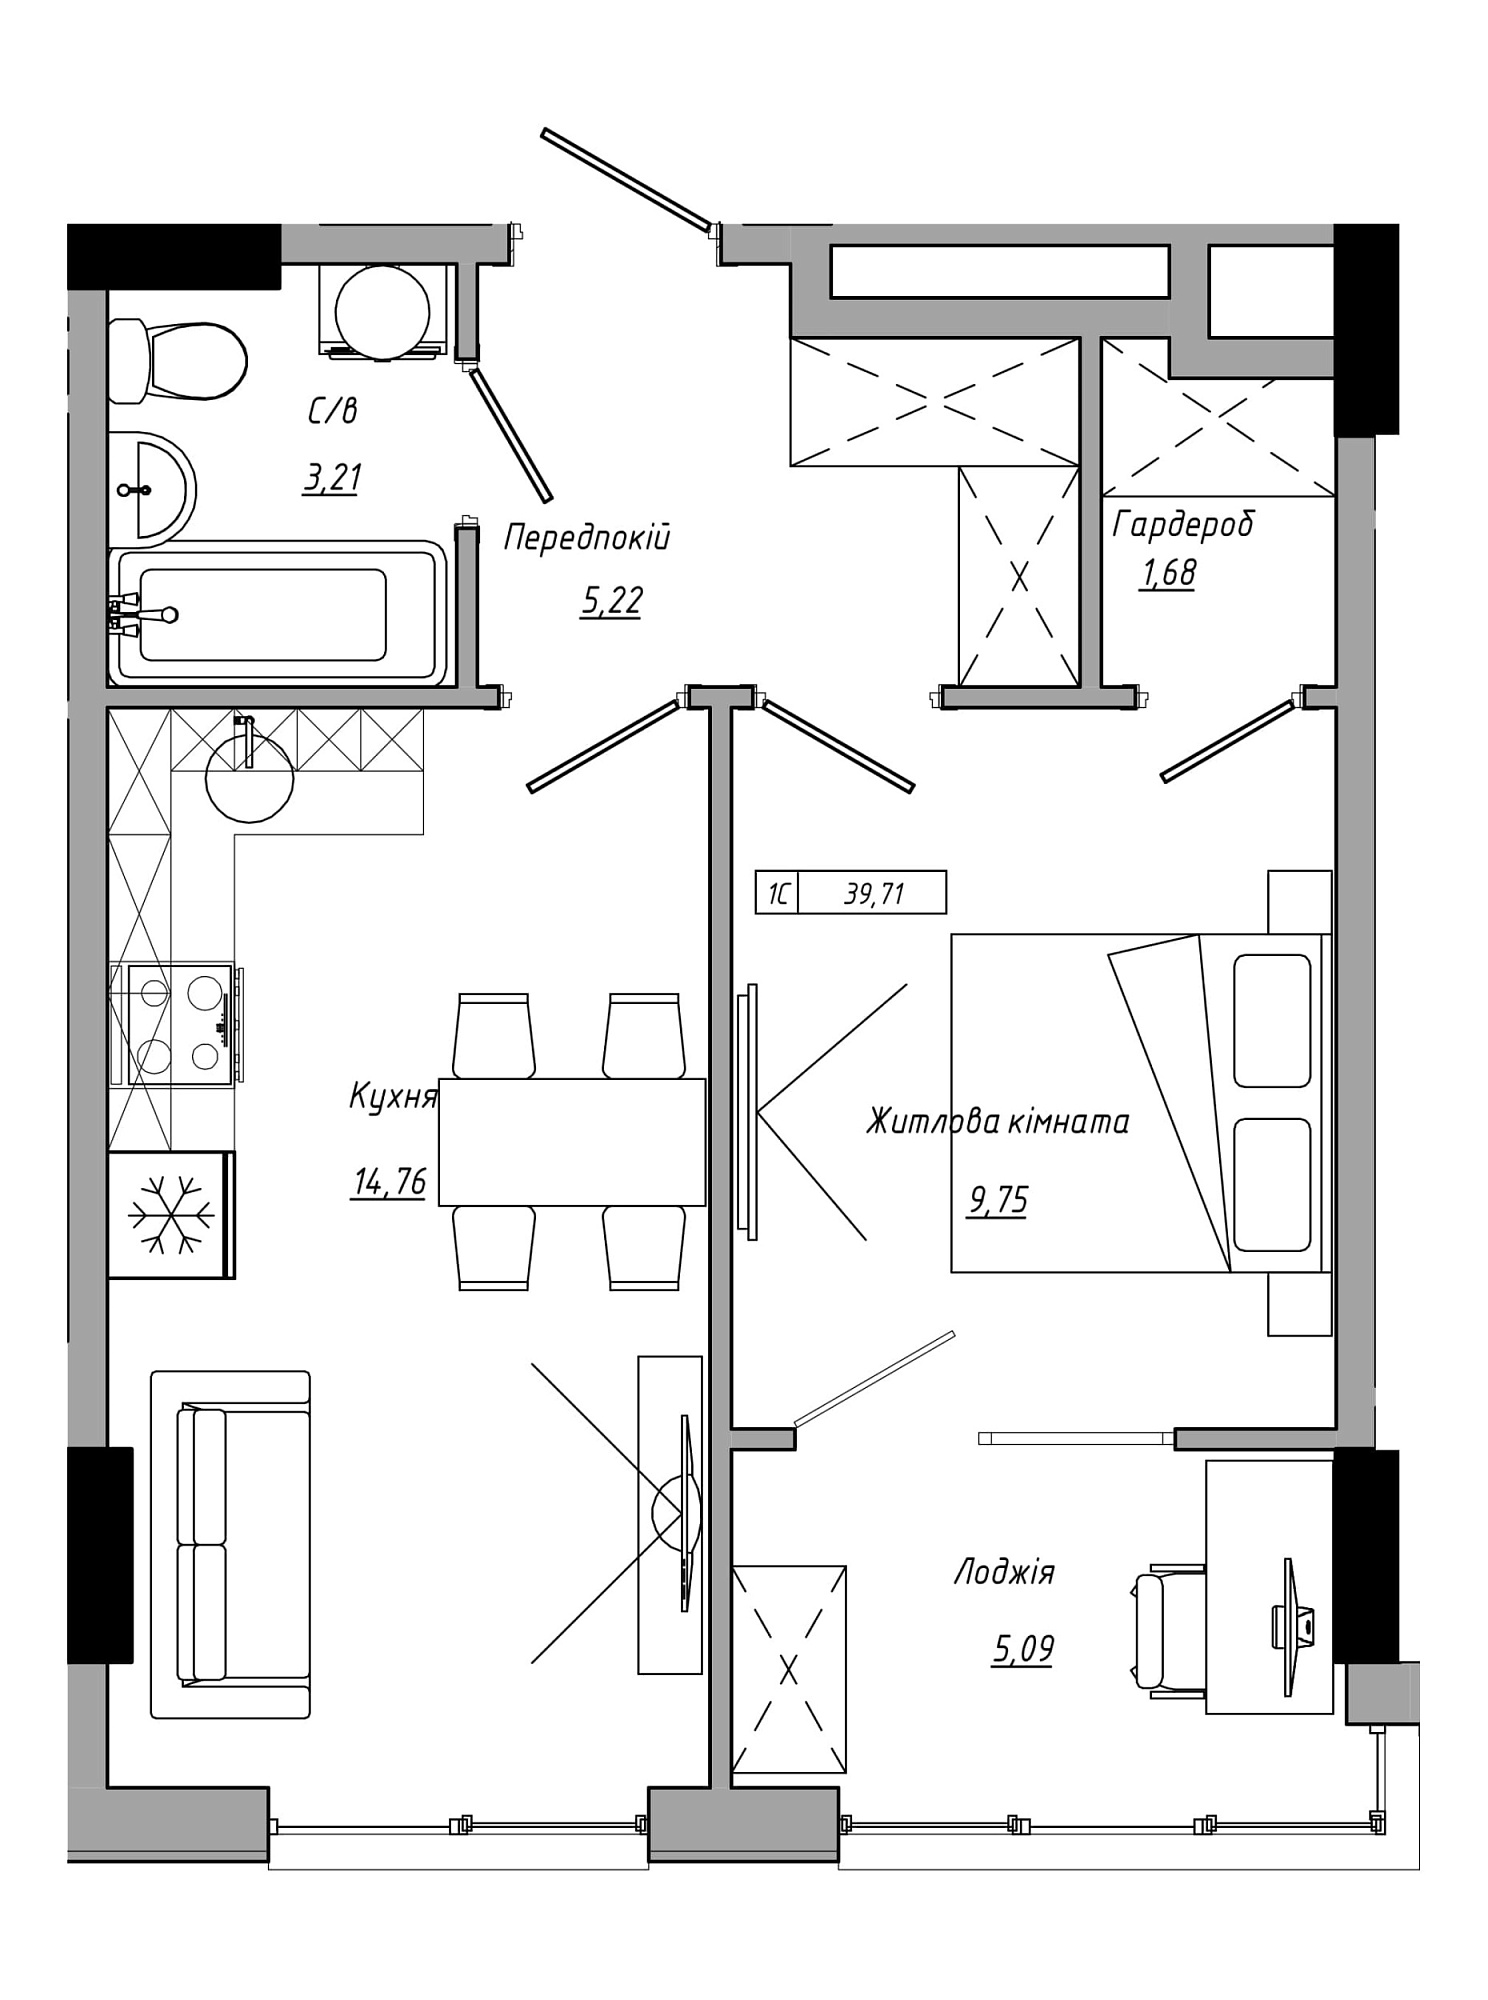 Планування 1-к квартира площею 38.41м2, AB-21-10/00022.